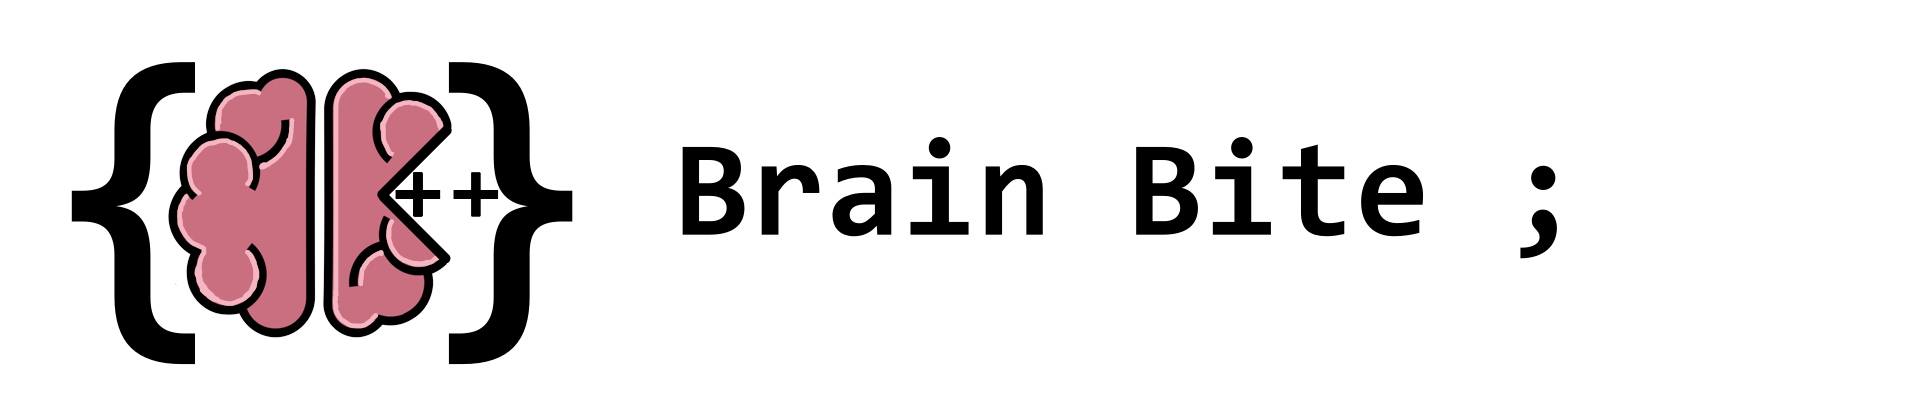 Brain Bite - Puzzle Game